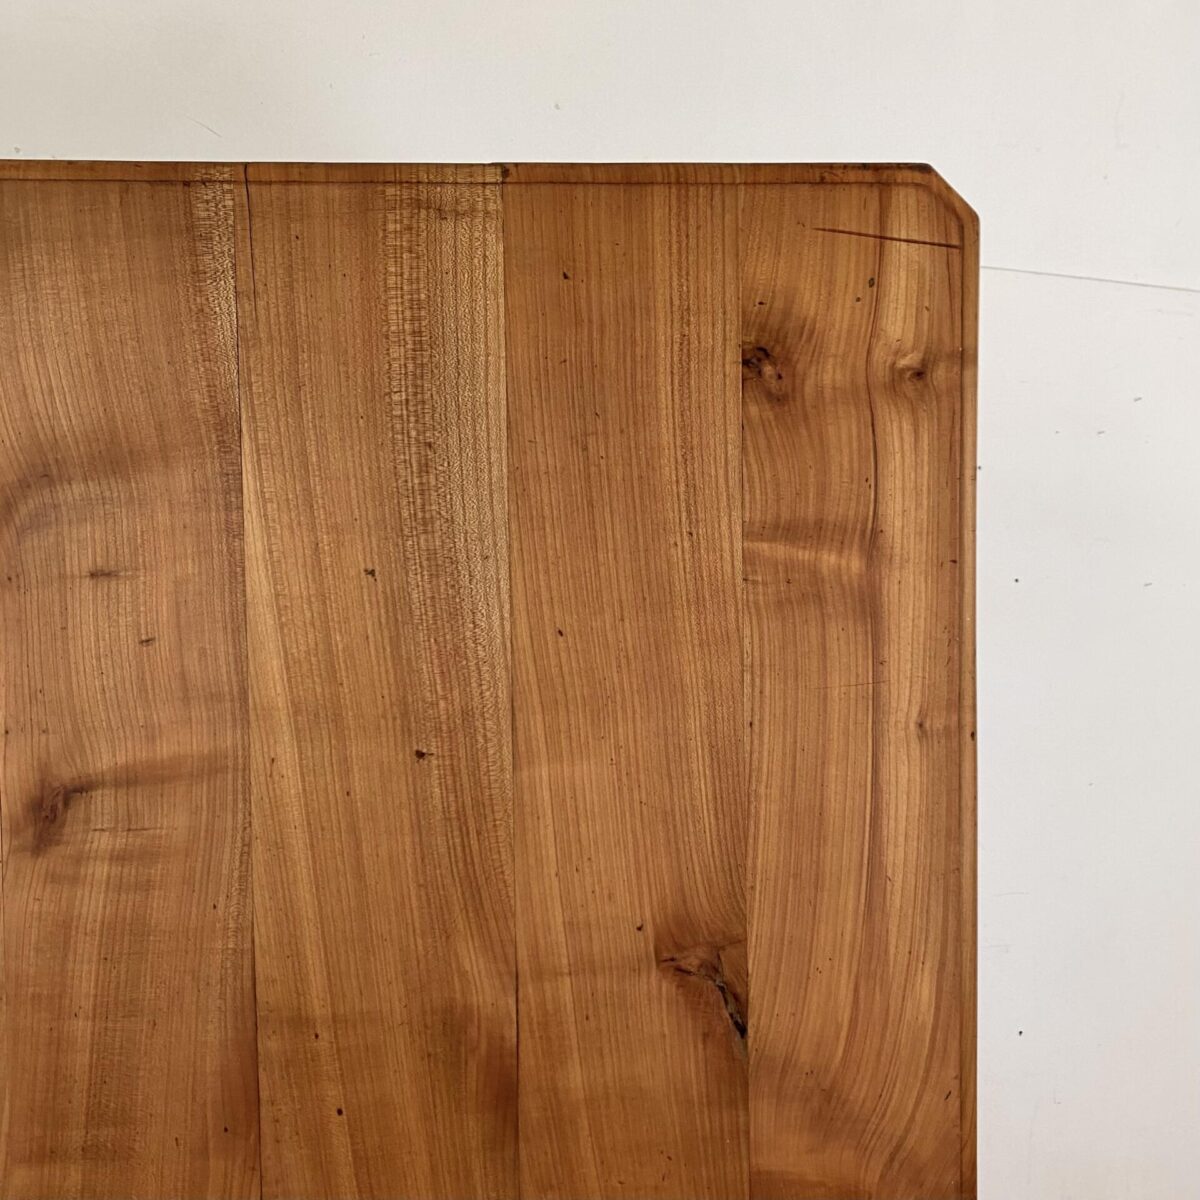 Deuxieme.shop alter Holztisch. Kirschbaum Biedermeiertisch mit drei Schubladen. 182x79cm Höhe 78cm. Der Tisch ist in stabilem überarbeiteten Zustand, die Holzoberflächen sind geschliffen und mit Naturöl behandelt. Es finden 8 Personen daran Platz. 